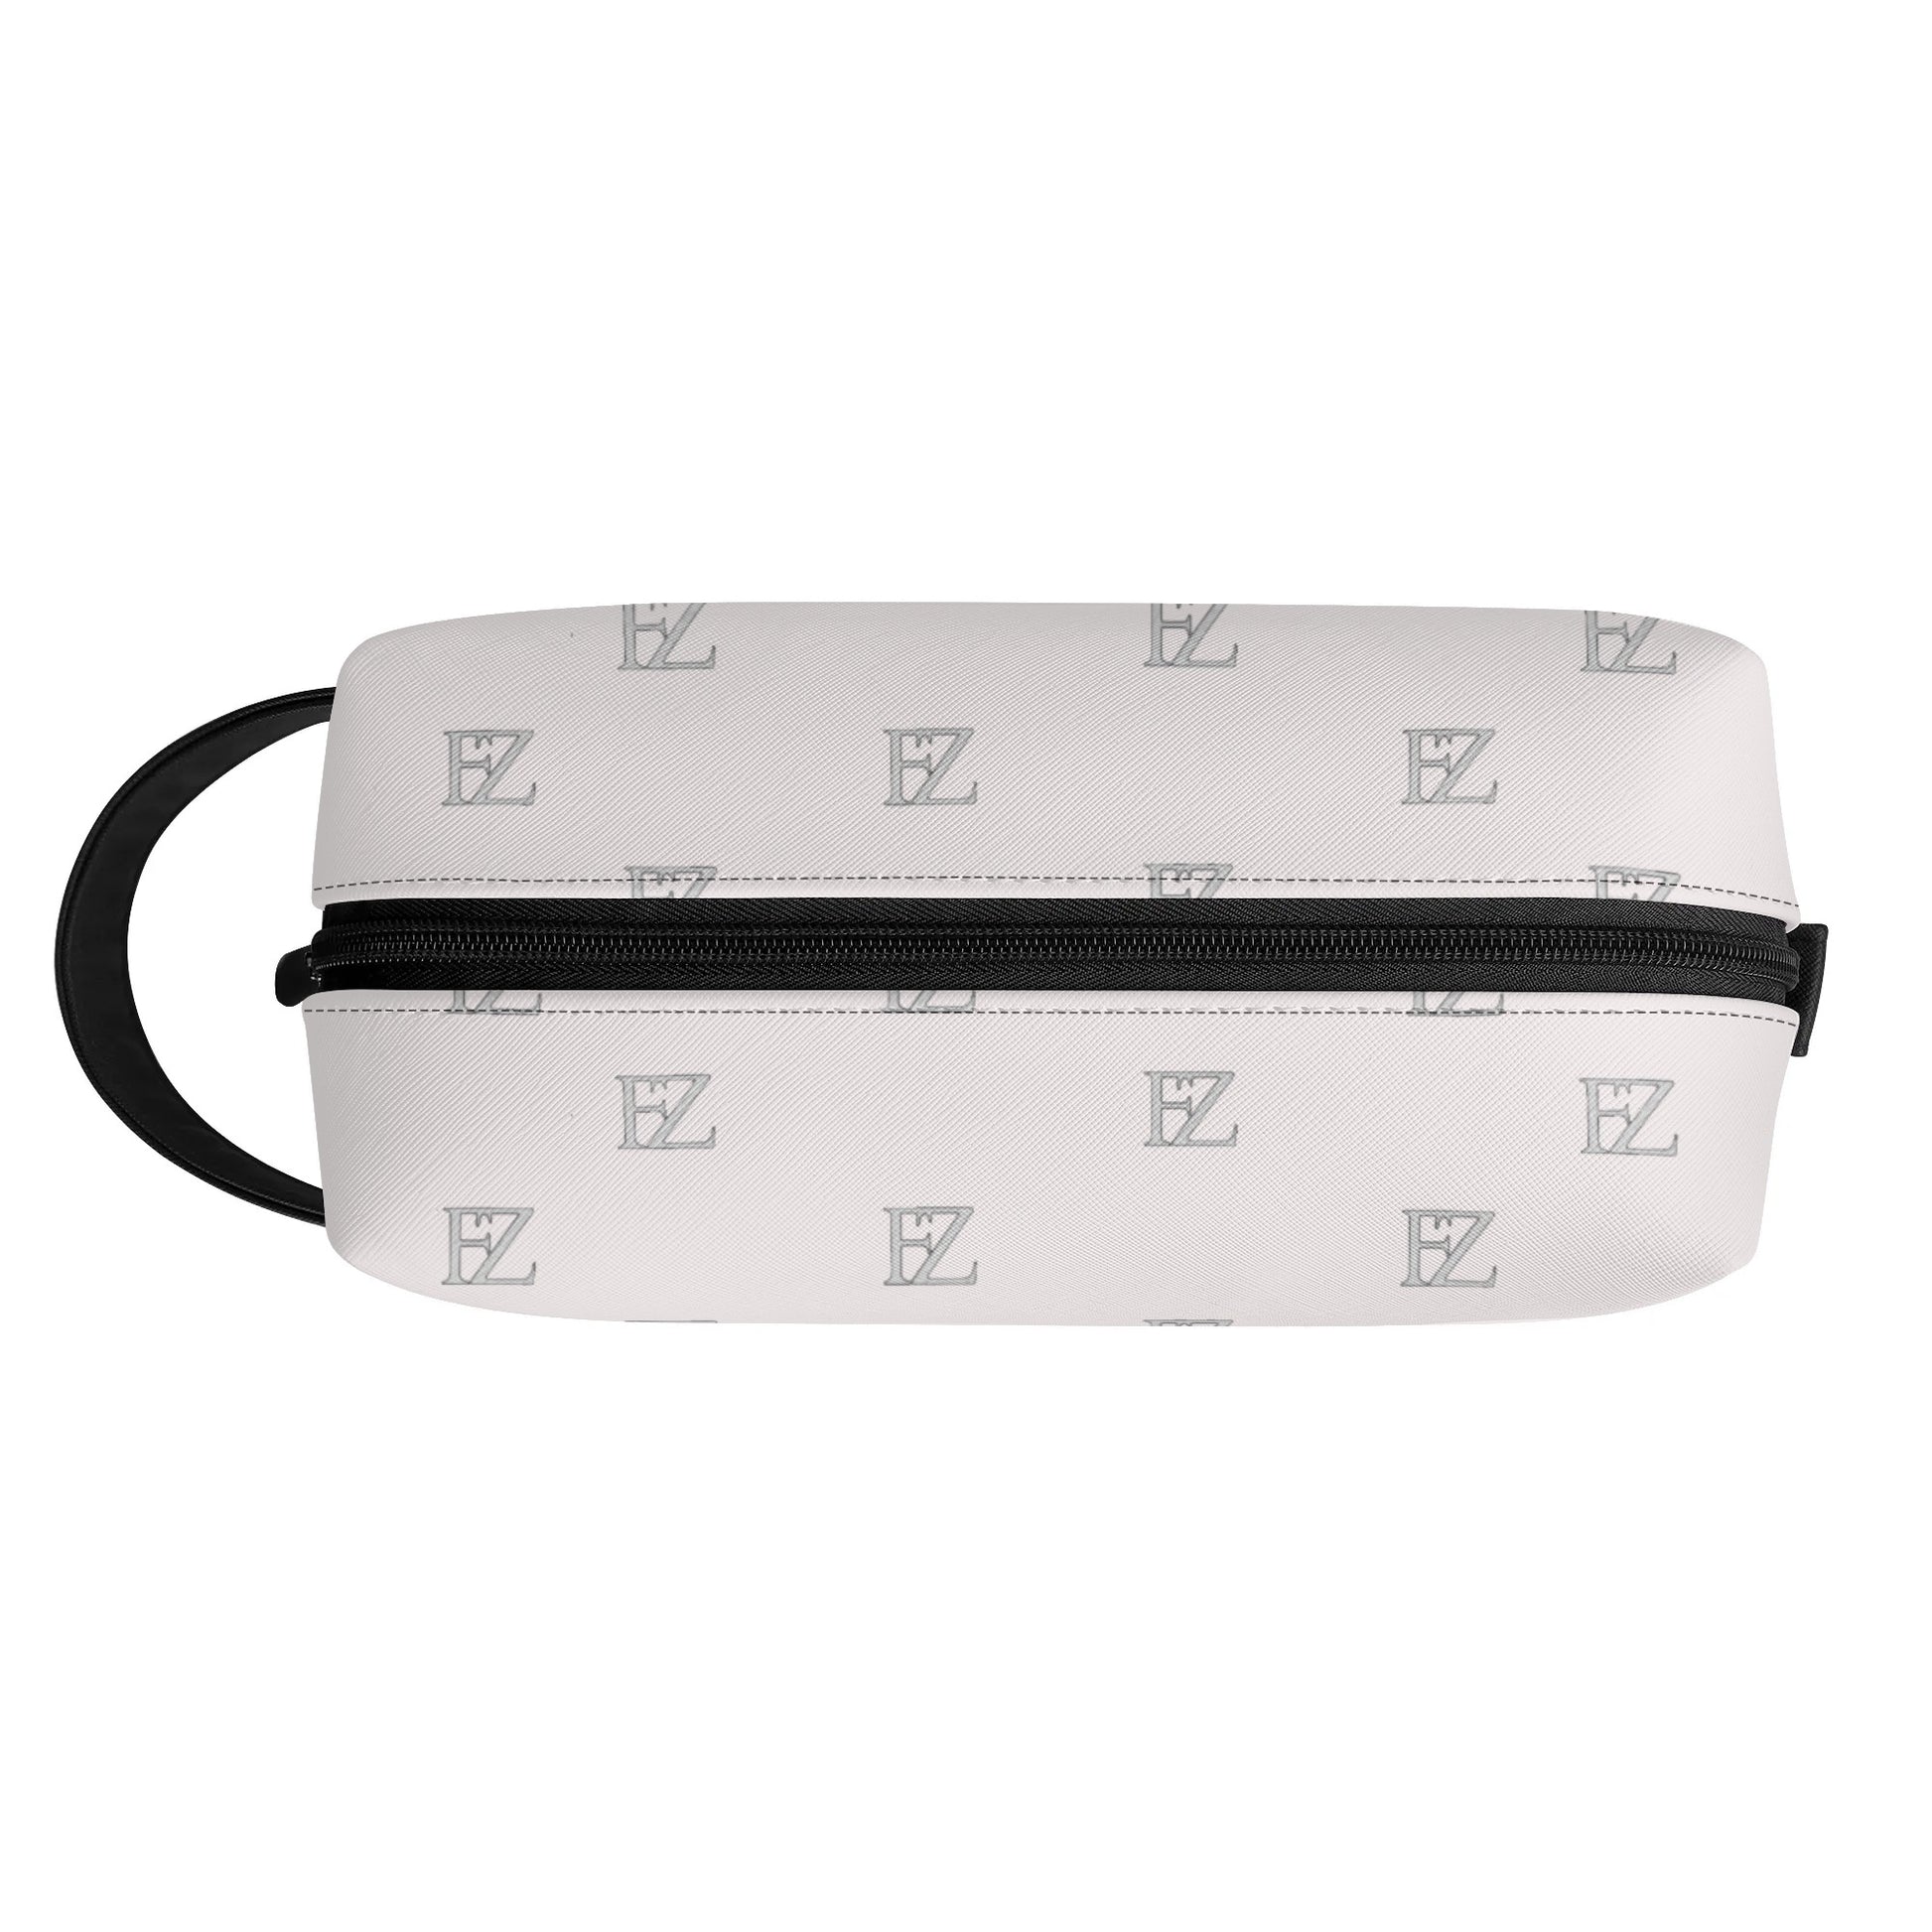 FZ Travel PU Leather Toiletry Bag - FZwear